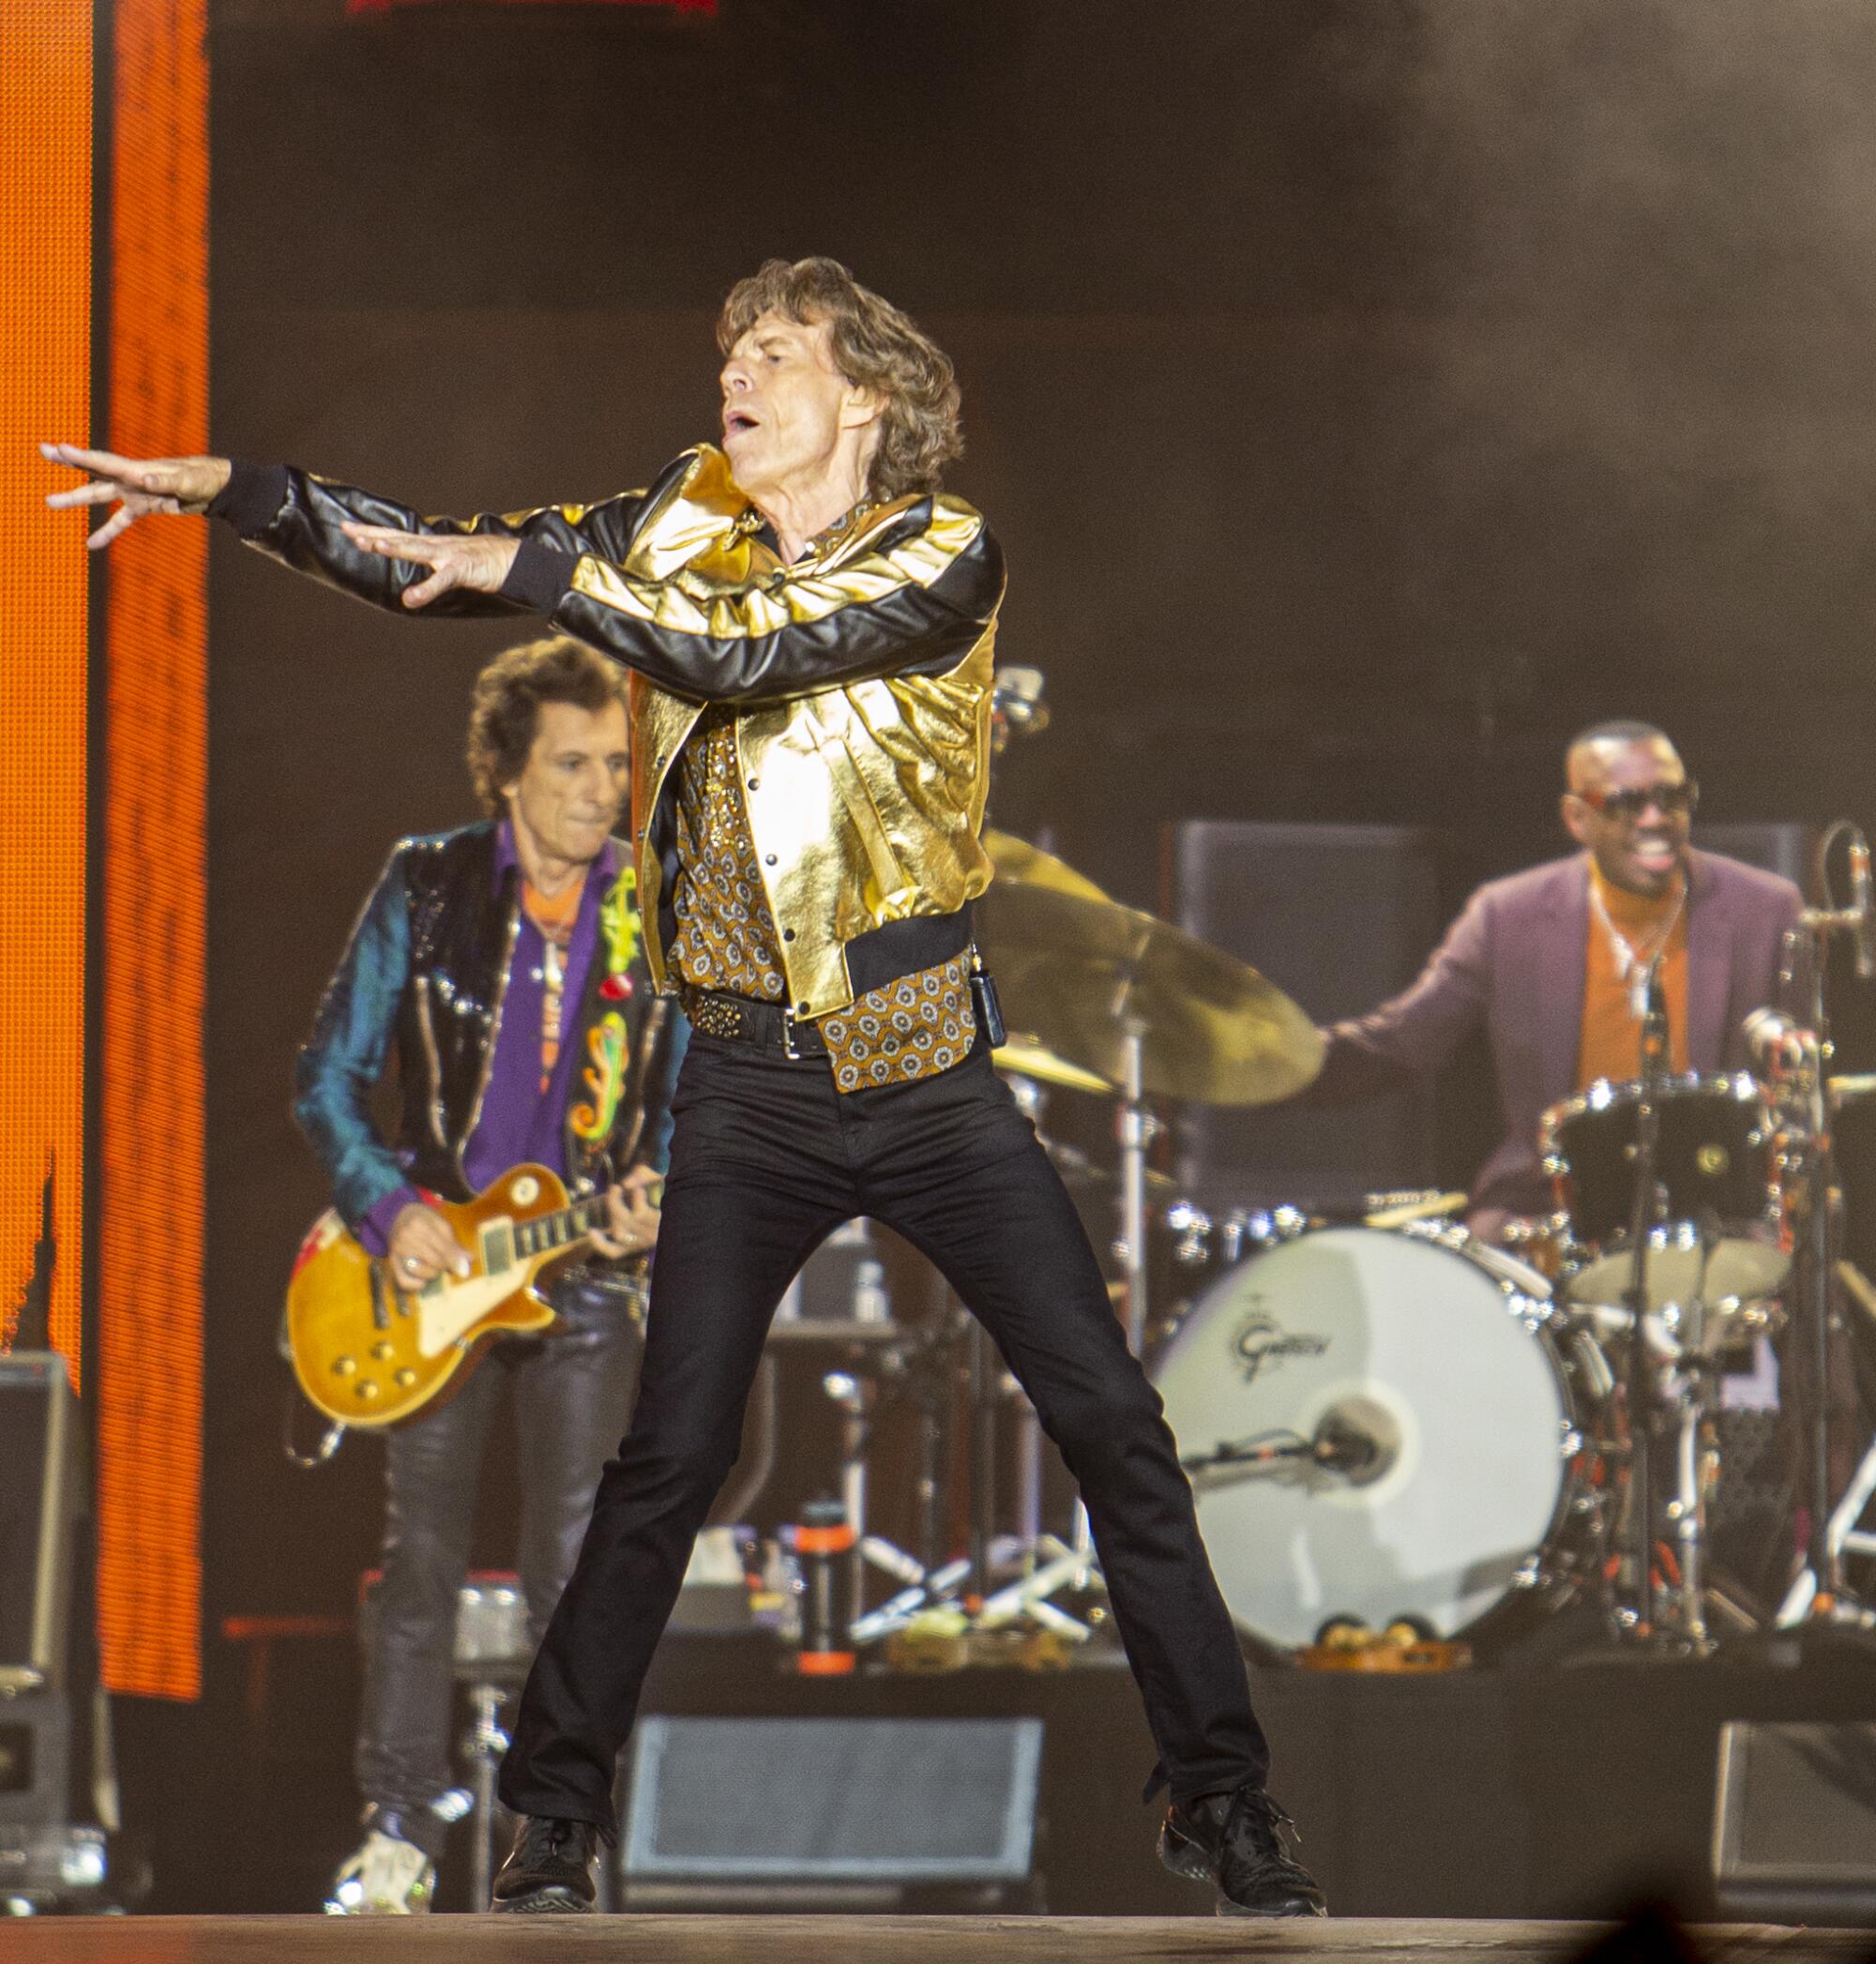 El vocalista Mick Jagger en el mismo show.